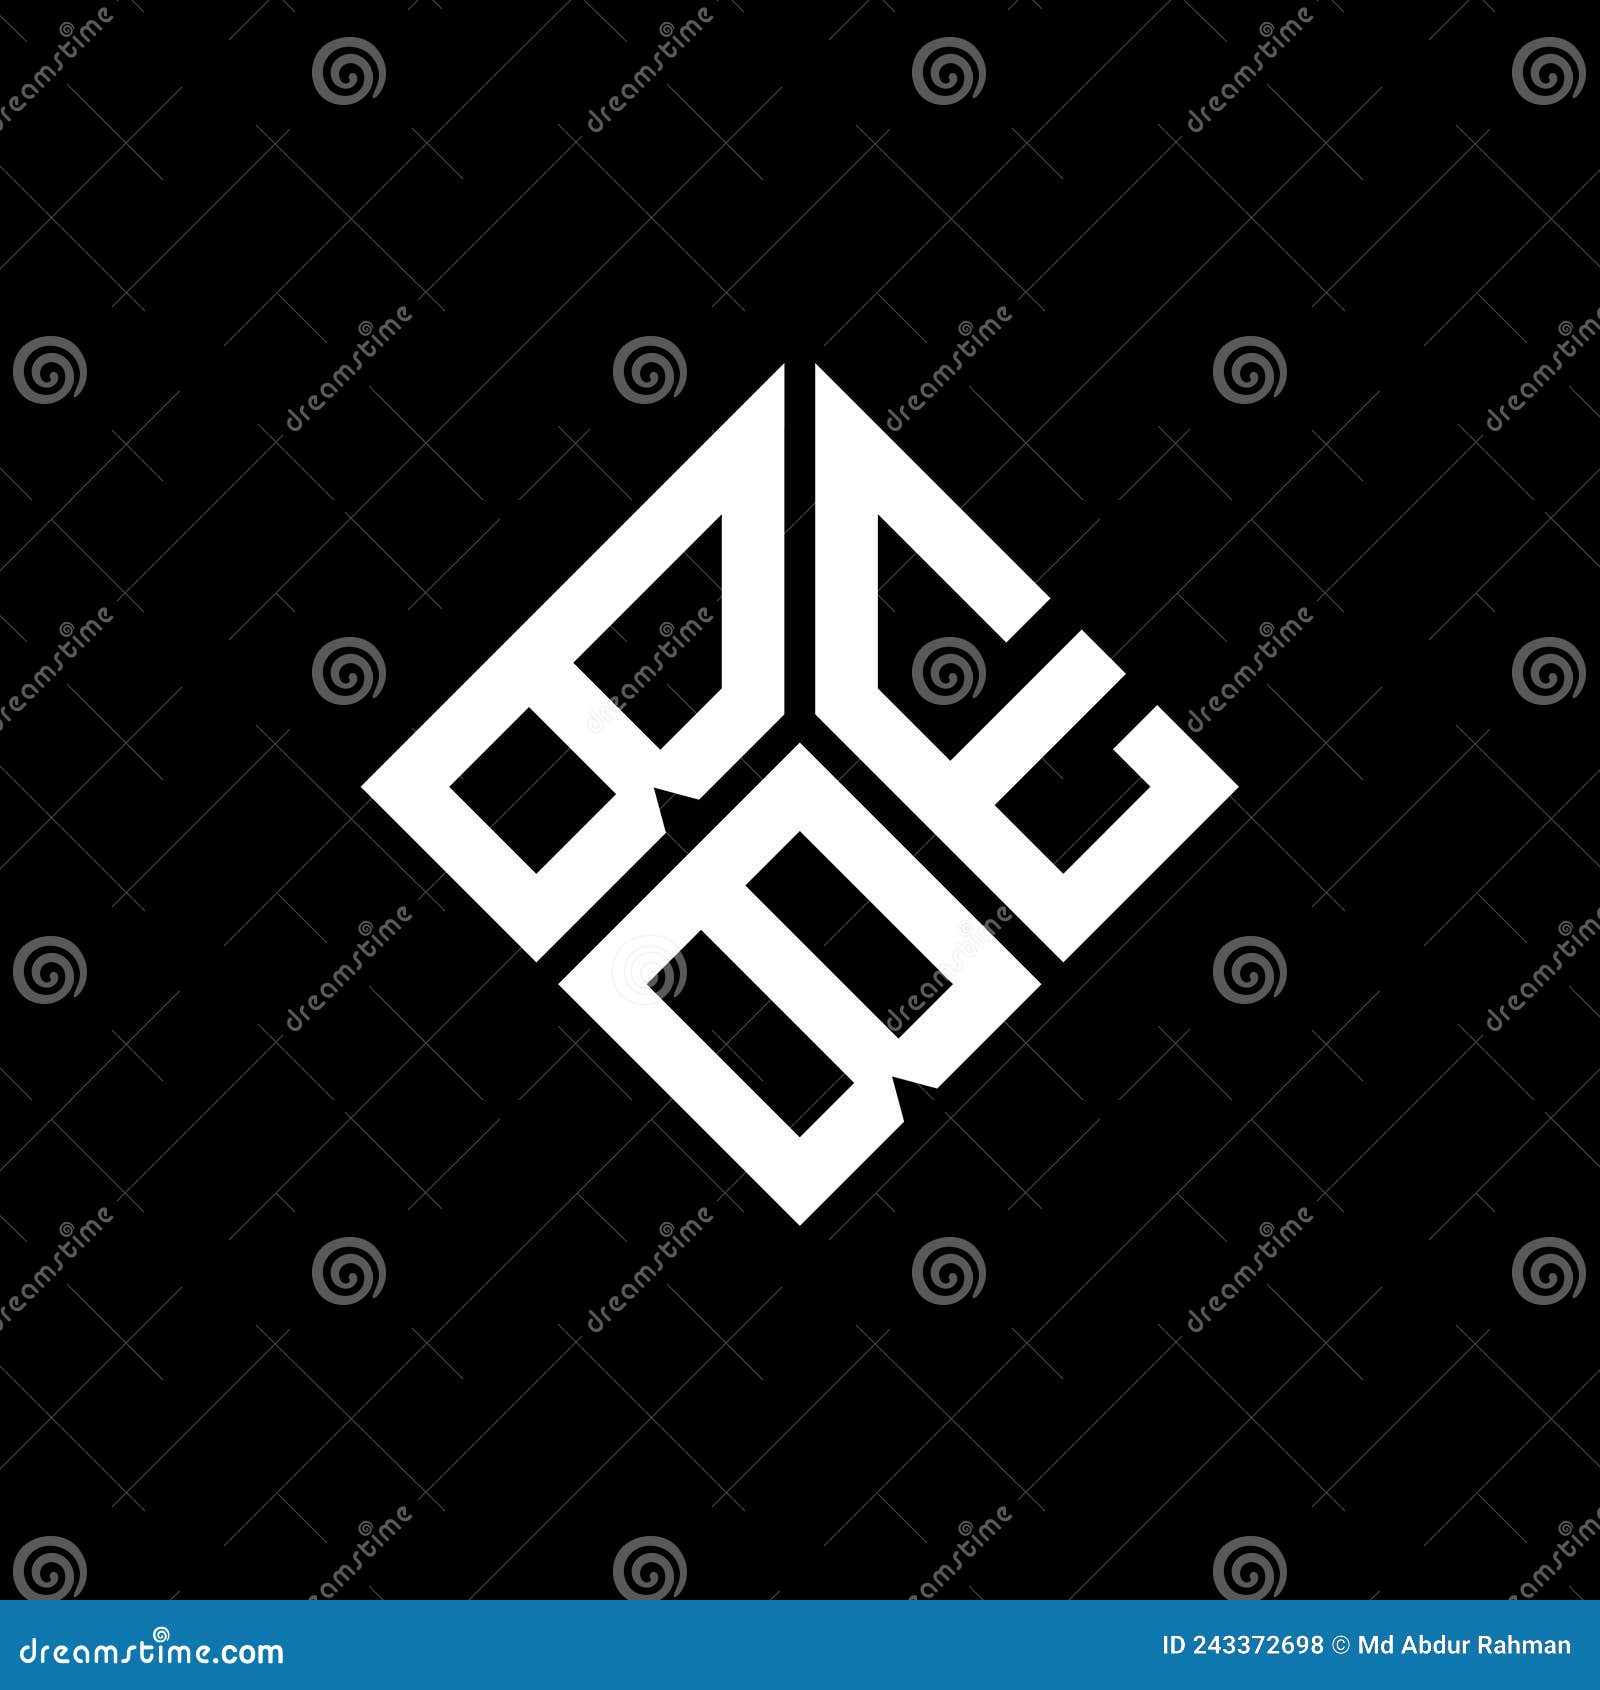 beb letter logo  on black background. beb creative initials letter logo concept. beb letter 